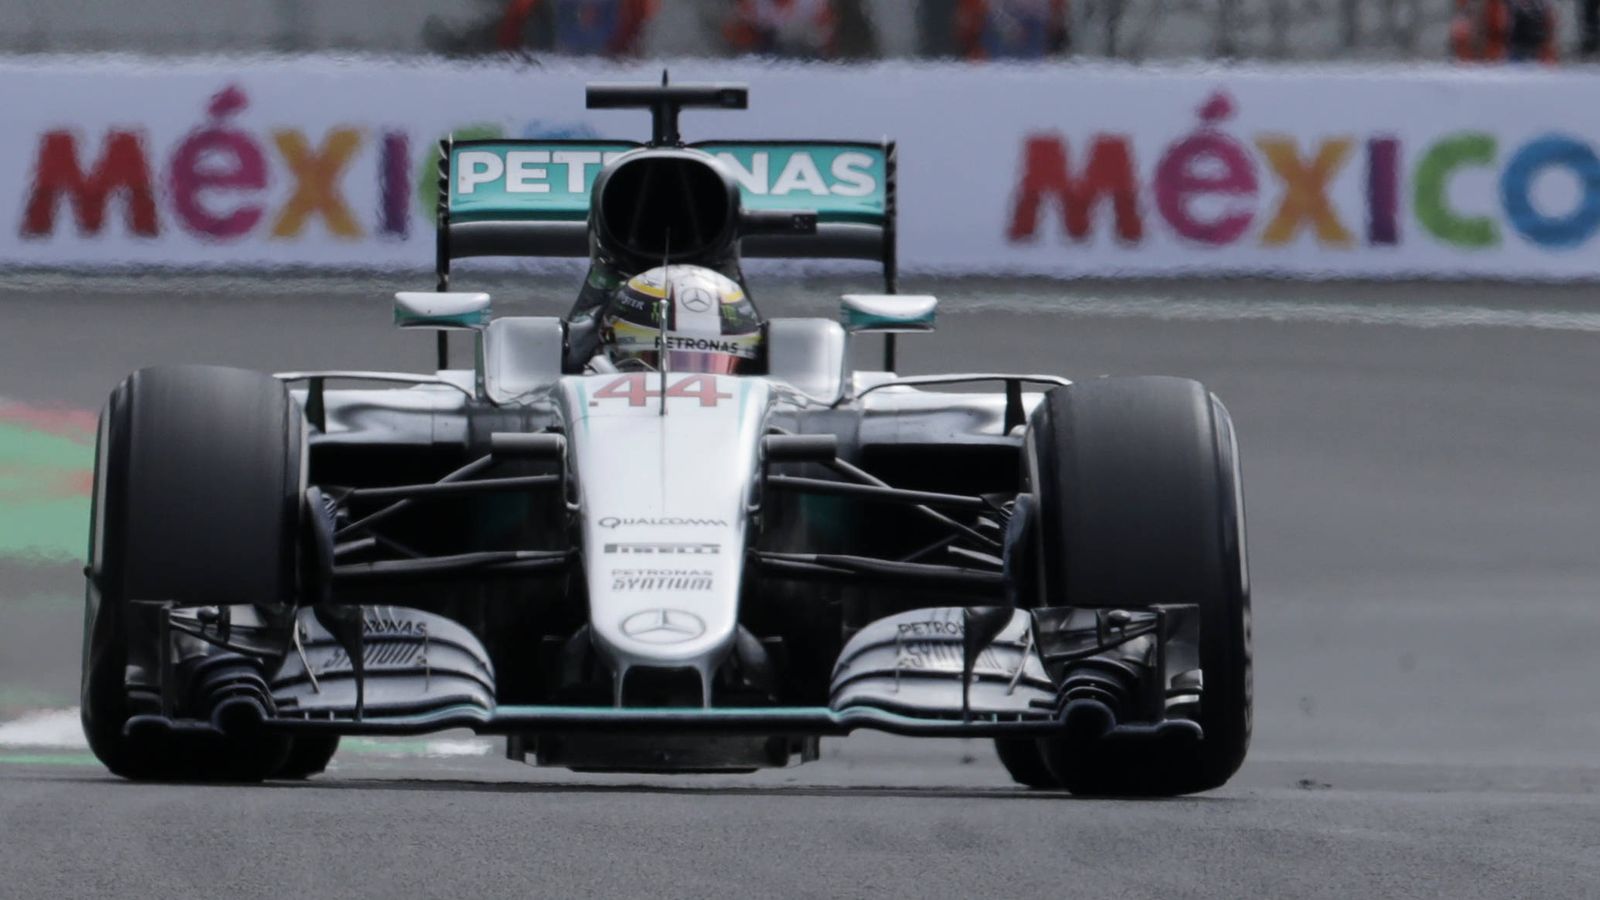 Foto: Lewis Hamilton rodando en el GP de México.